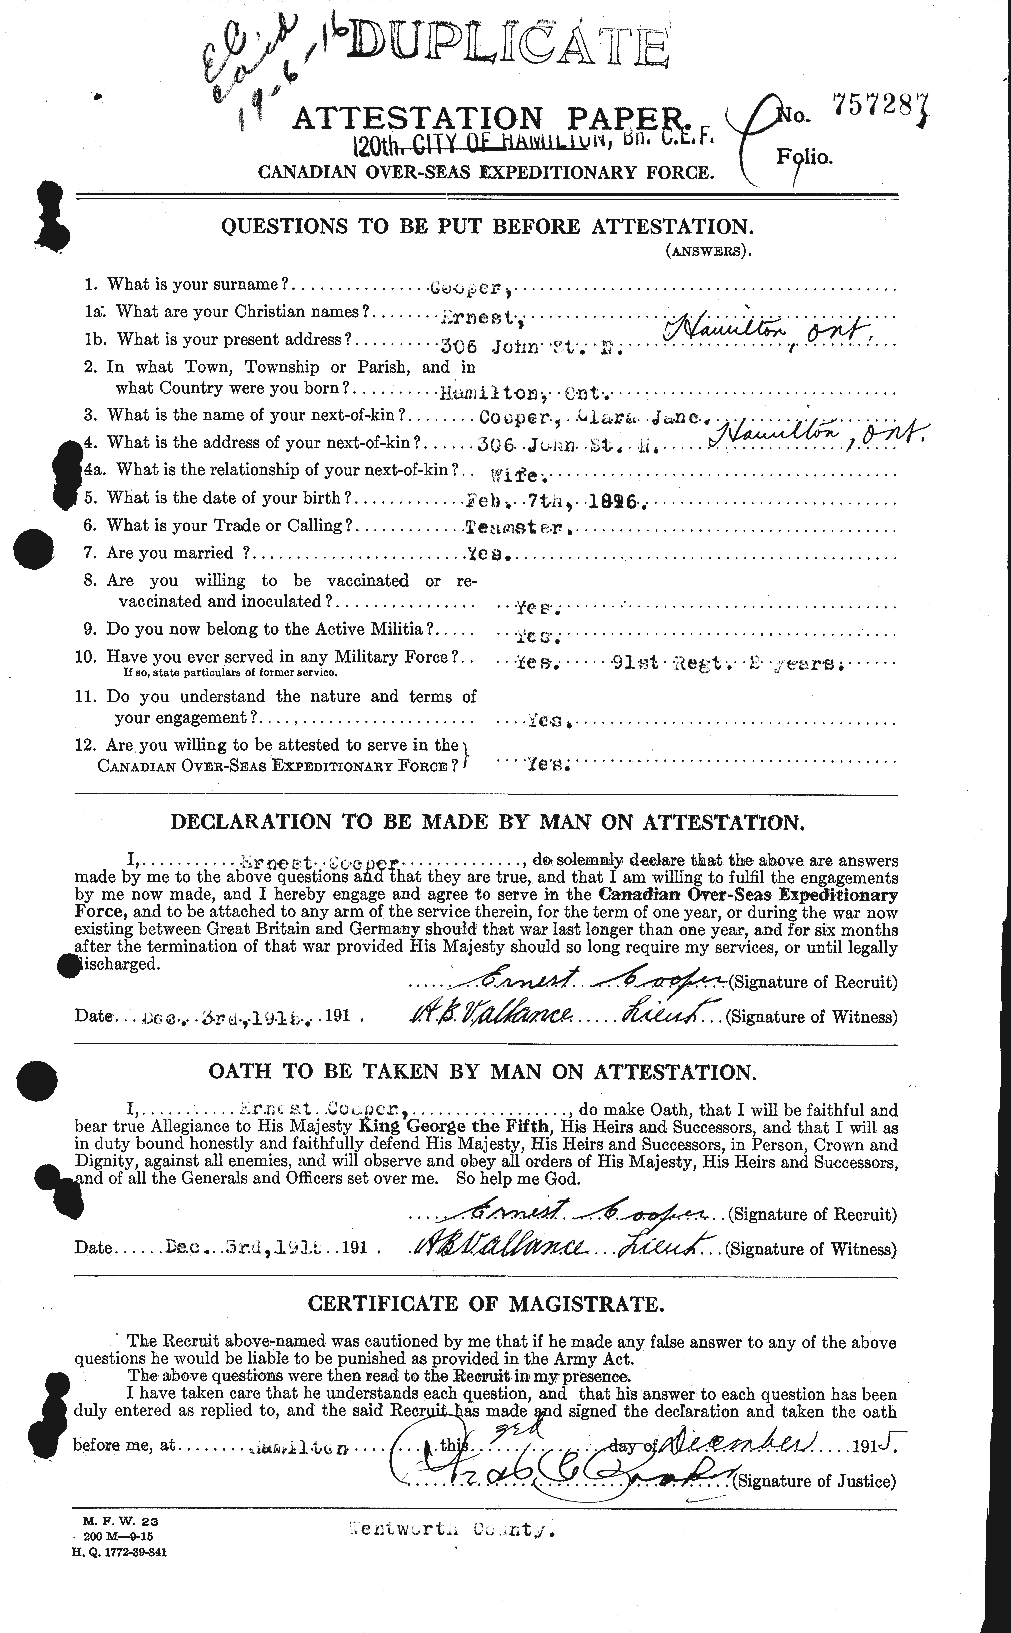 Dossiers du Personnel de la Première Guerre mondiale - CEC 058484a